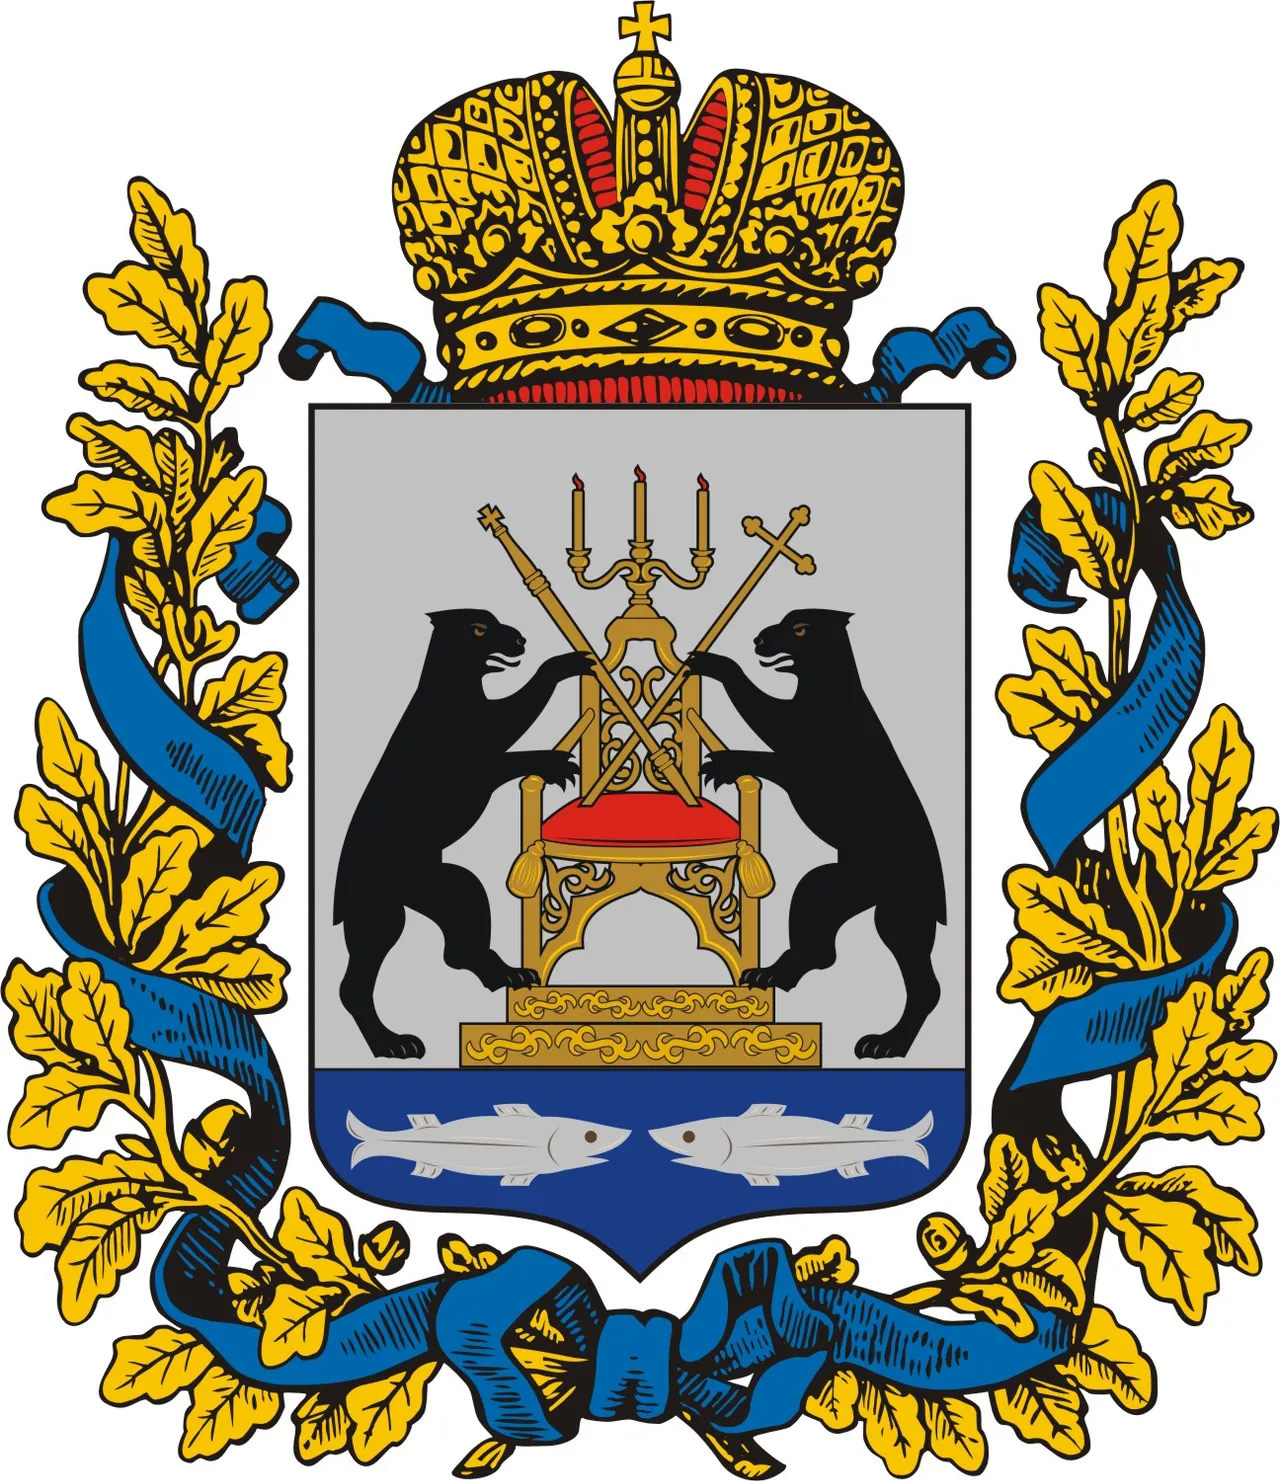 Герб Новгородской области